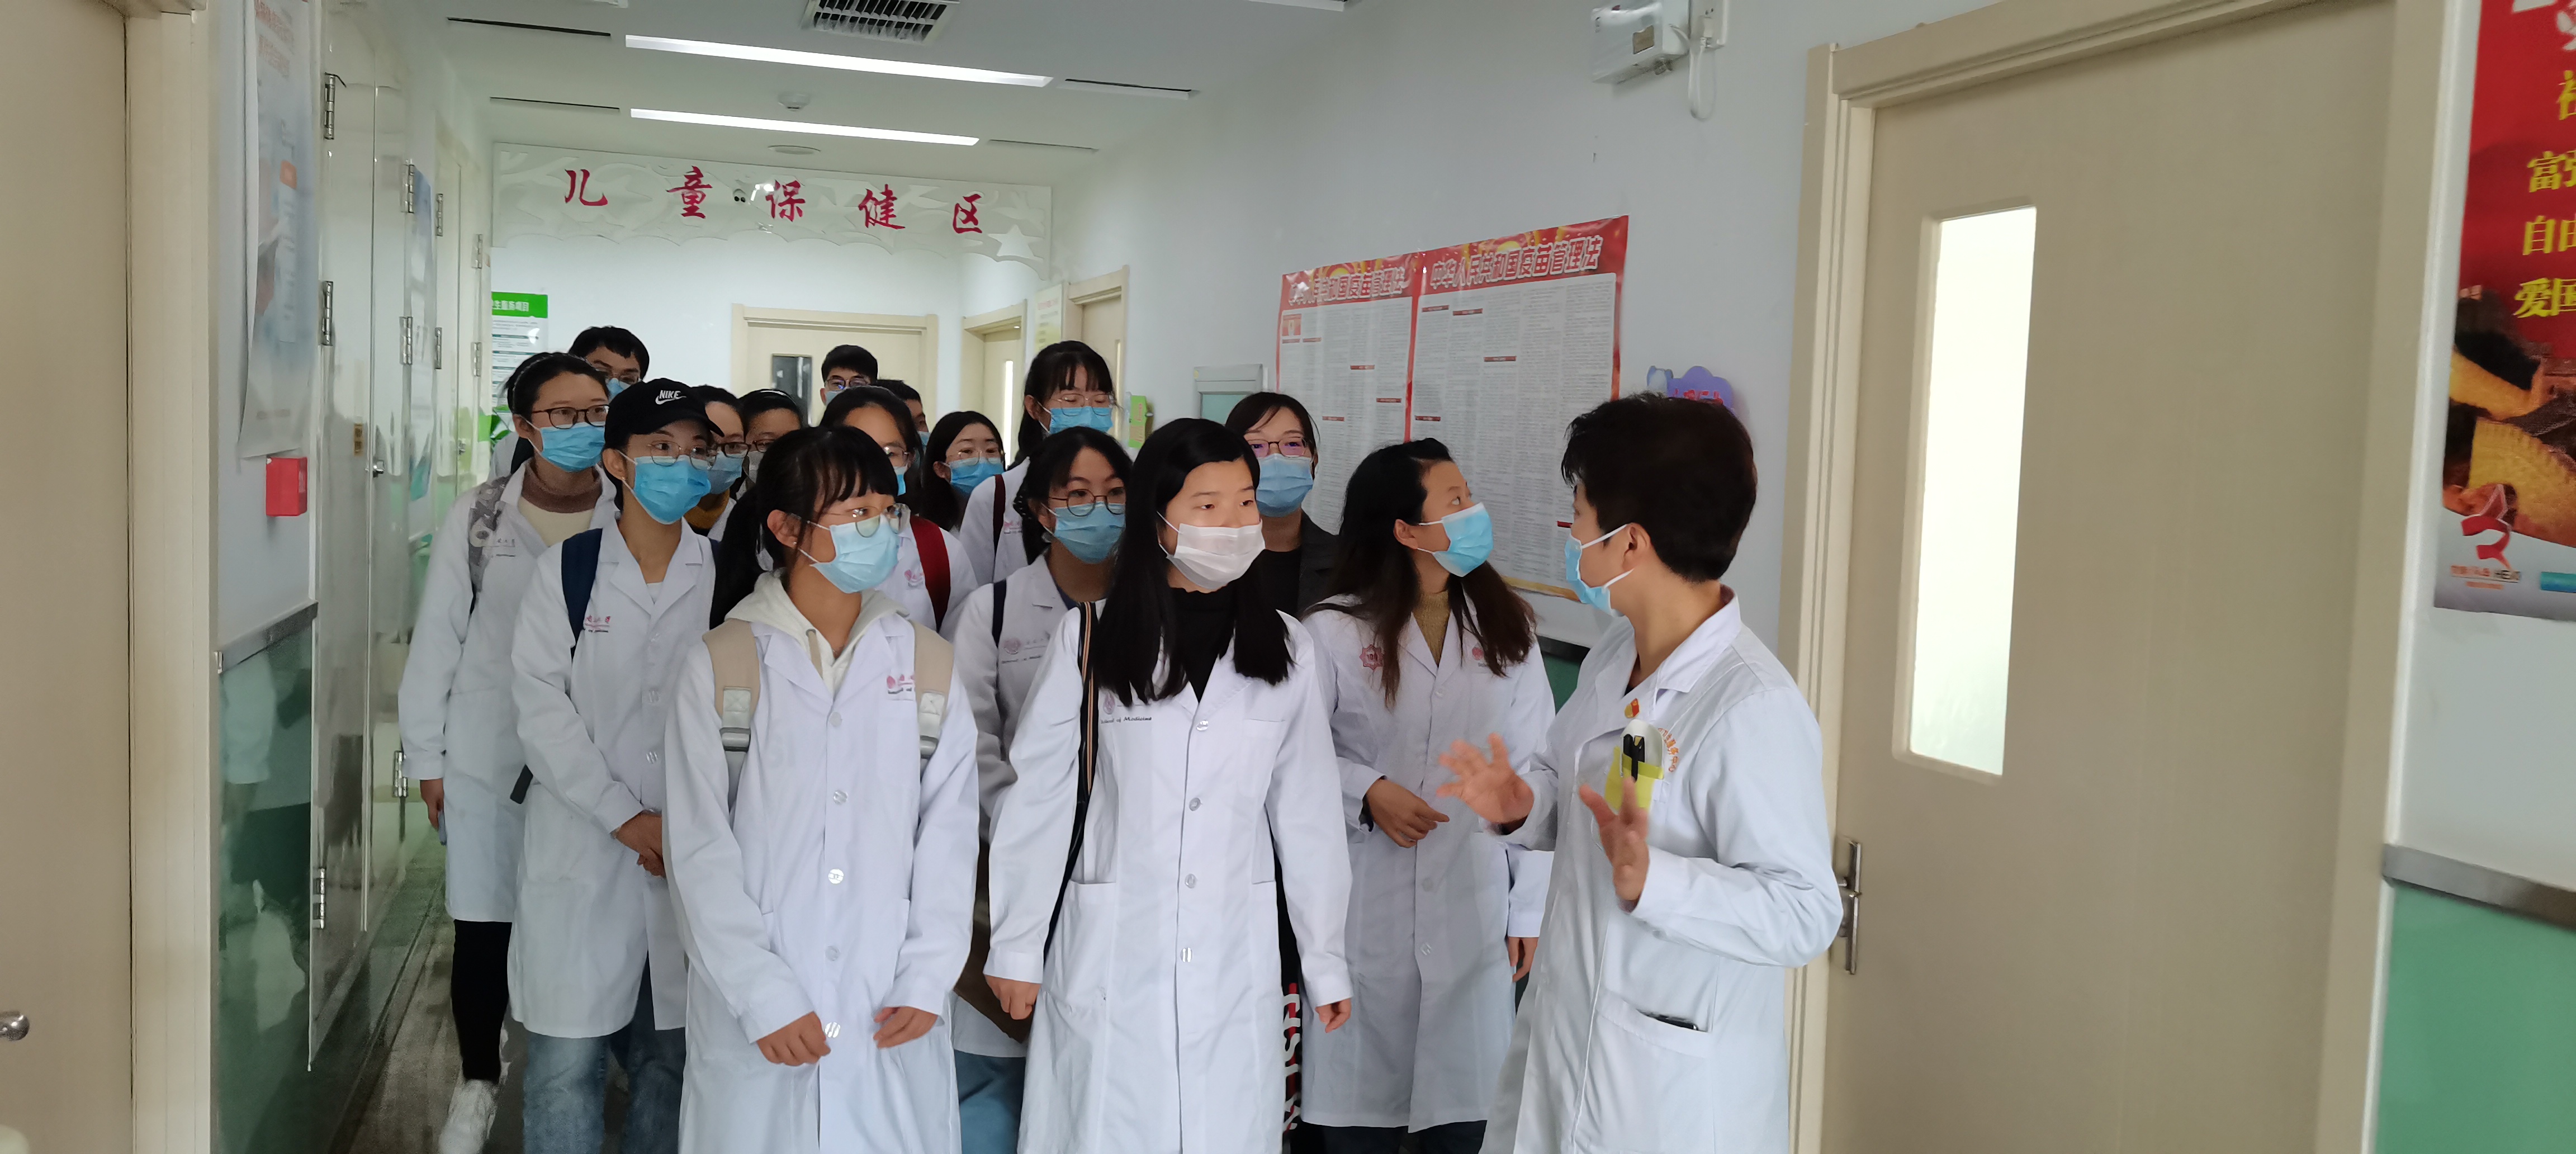 鸿泰盛身体姿态及步态分析系统进驻中国人民解放军总医院